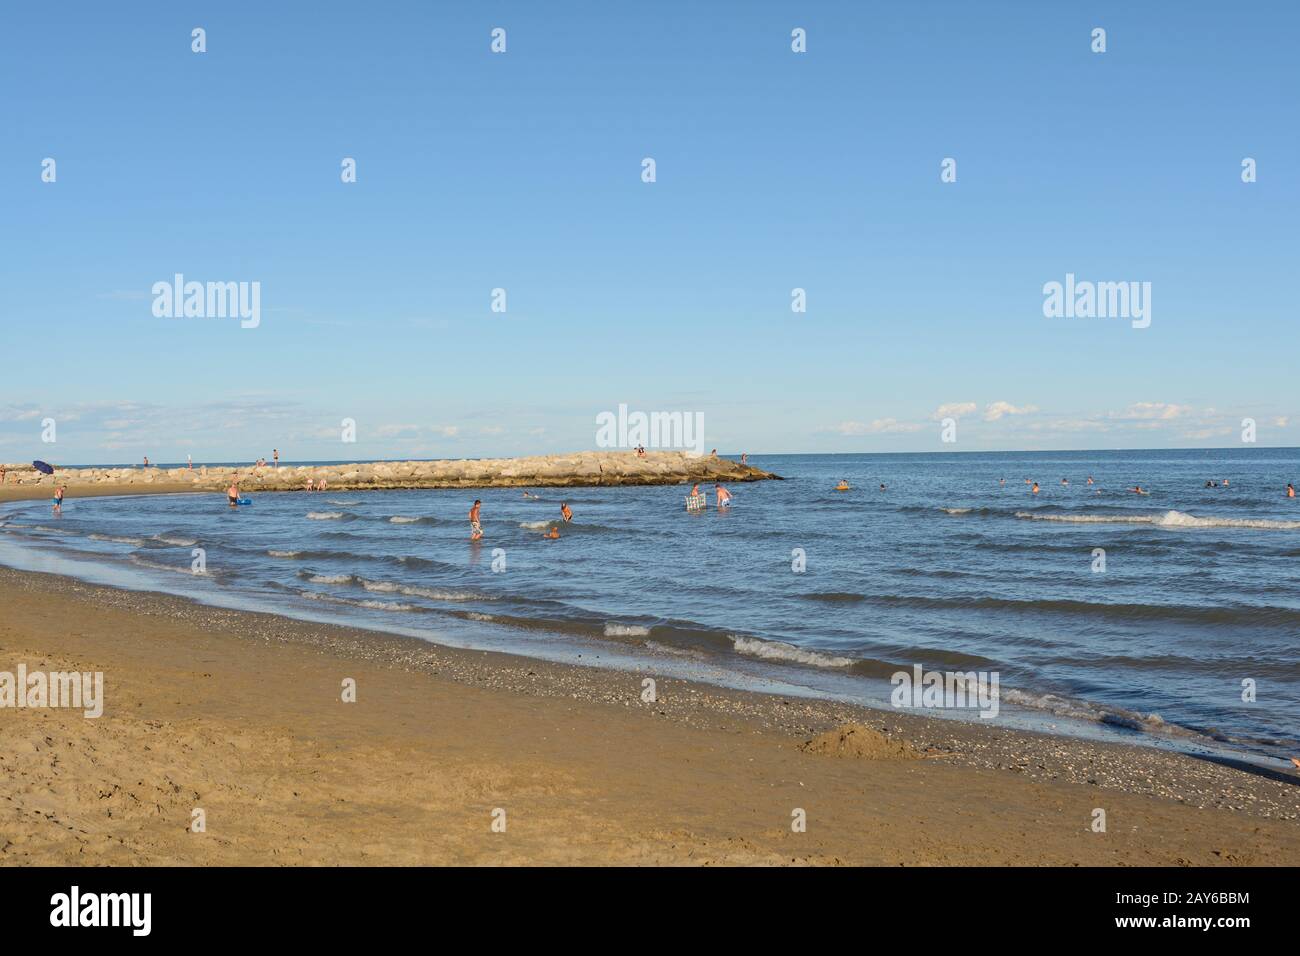 Le persone godono di vacanze balneari sull'Adriatico - spiaggia e mare Foto Stock